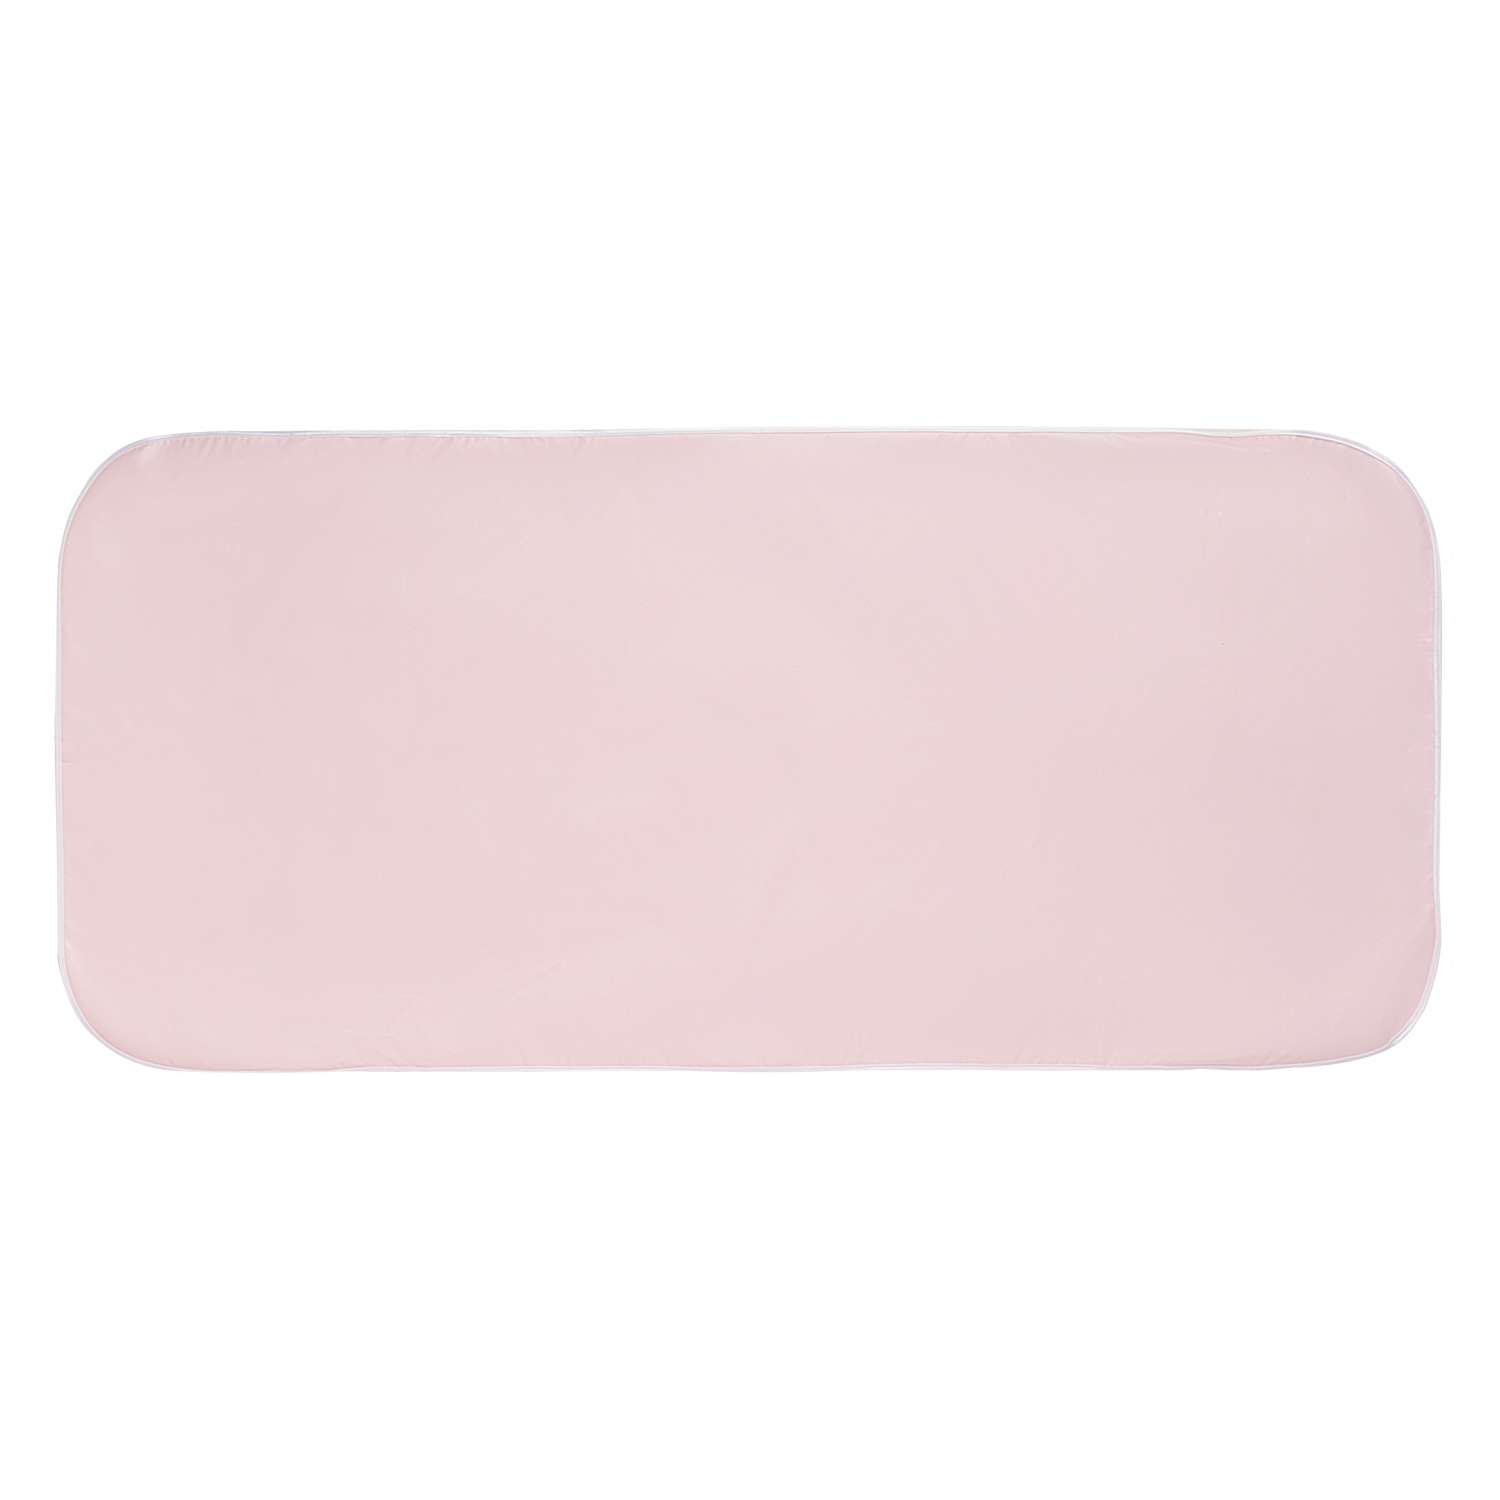 Наматрасник в кроватку Витоша непромокаемый 60х 120 Розовый - фото 3